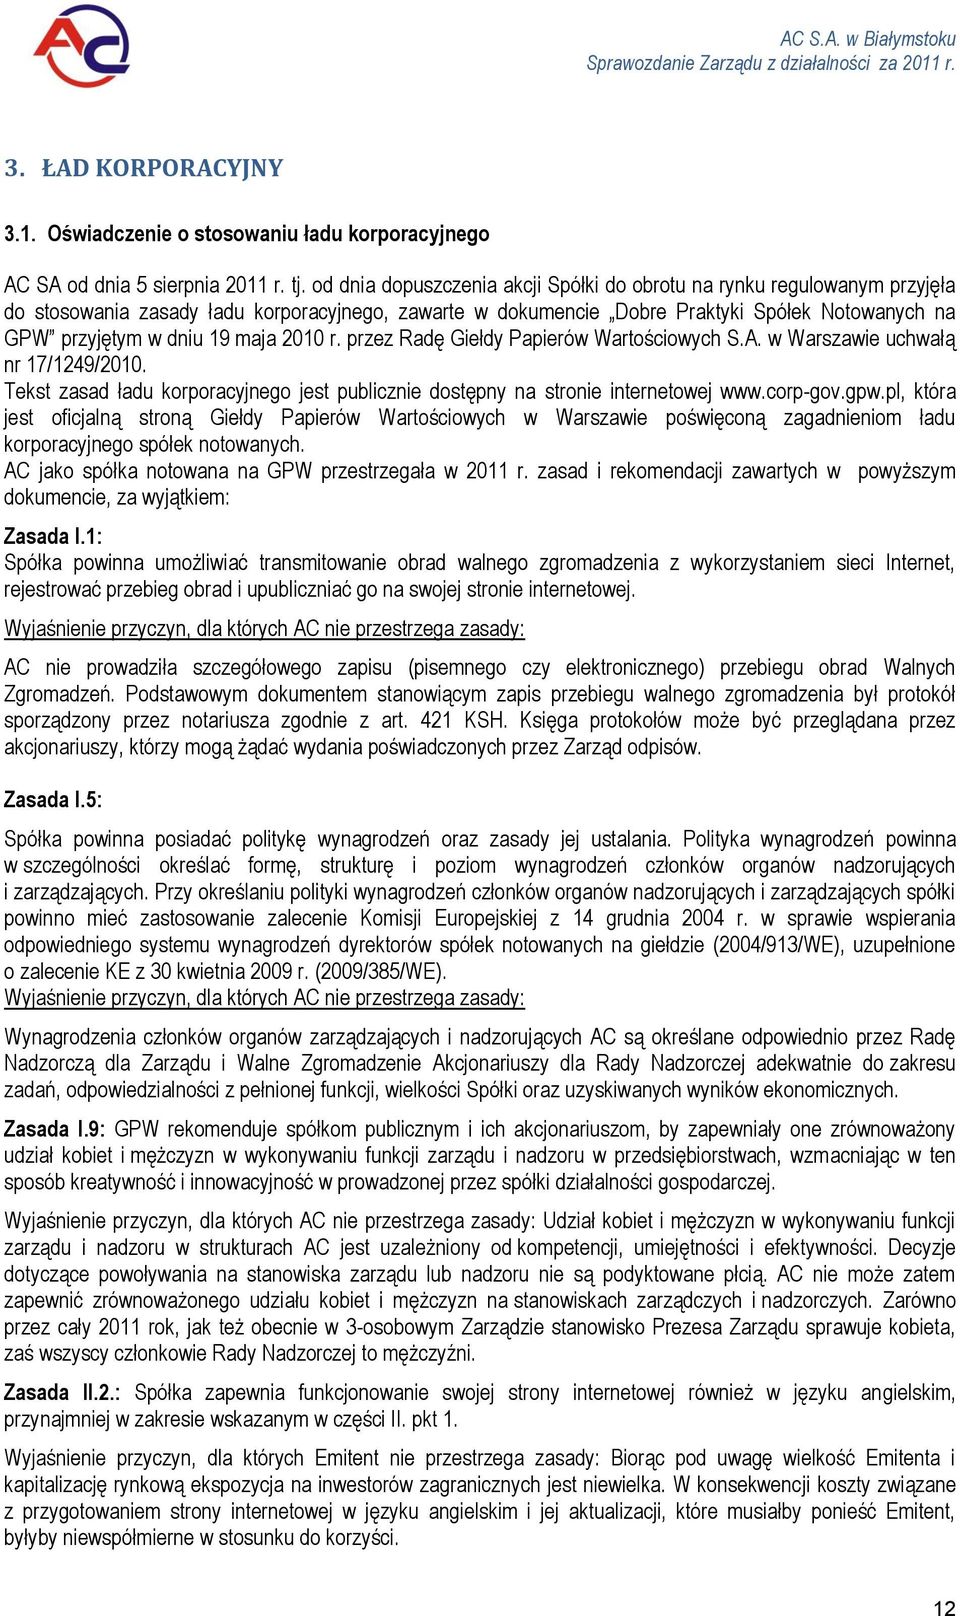 maja 2010 r. przez Radę Giełdy Papierów Wartościowych S.A. w Warszawie uchwałą nr 17/1249/2010. Tekst zasad ładu korporacyjnego jest publicznie dostępny na stronie internetowej www.corp-gov.gpw.